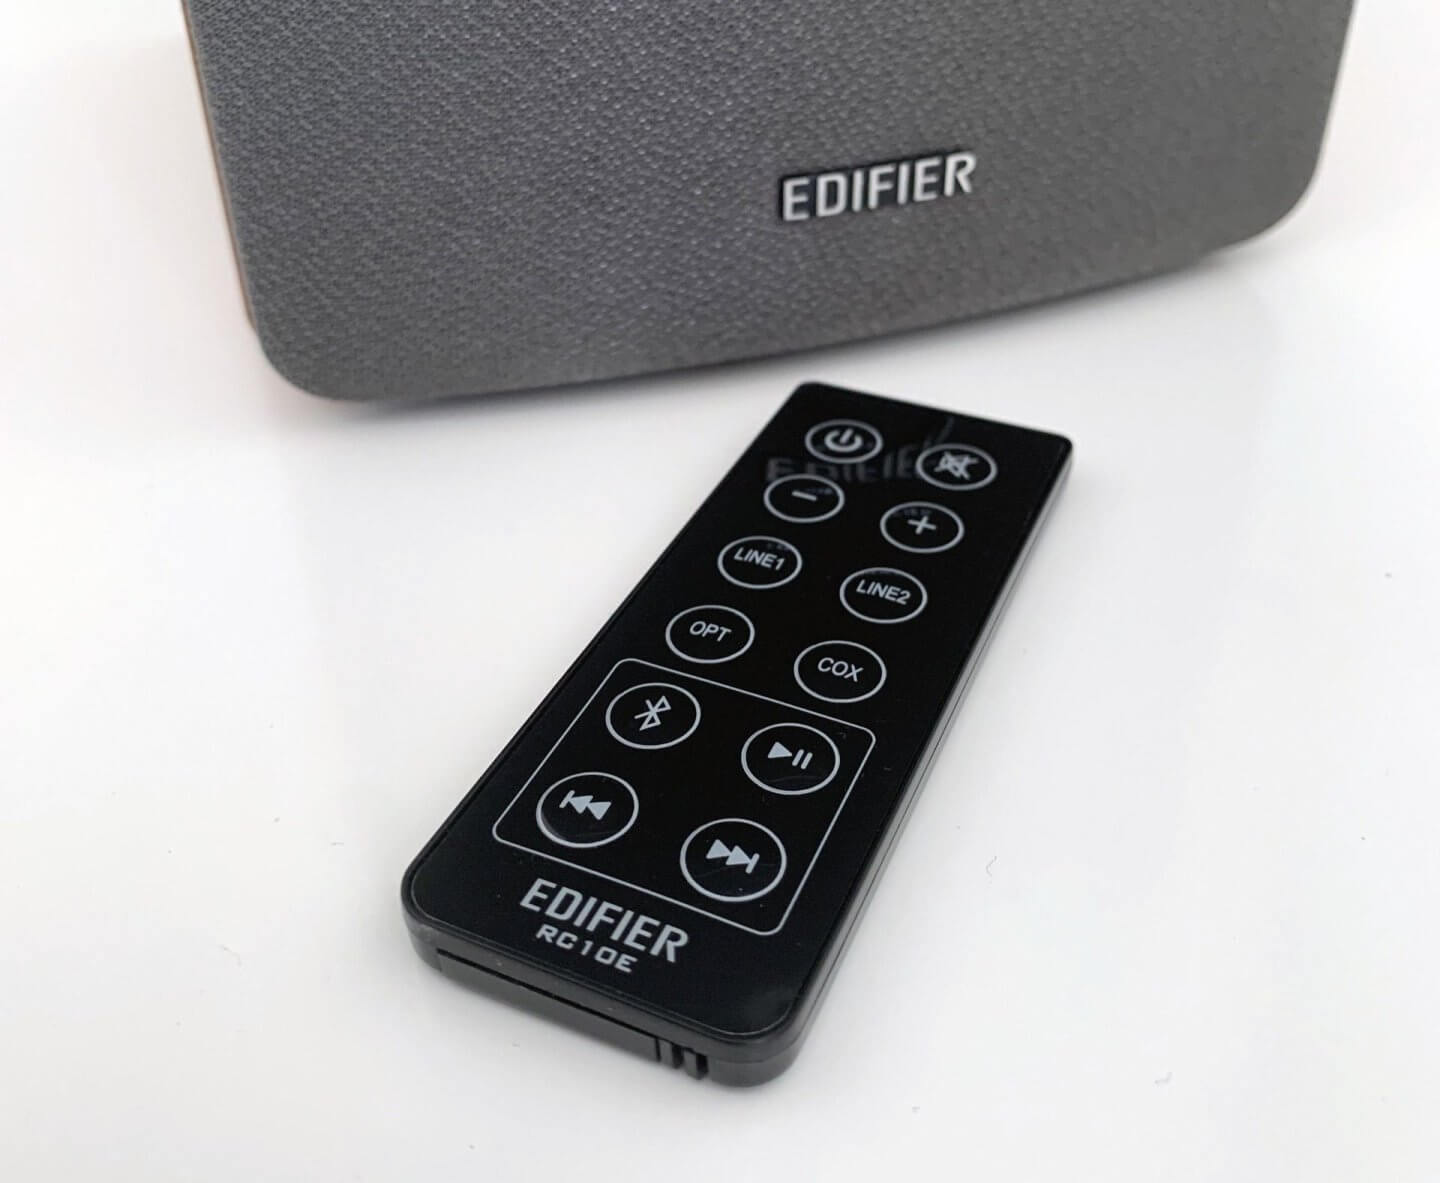 Edifier speaker remote control